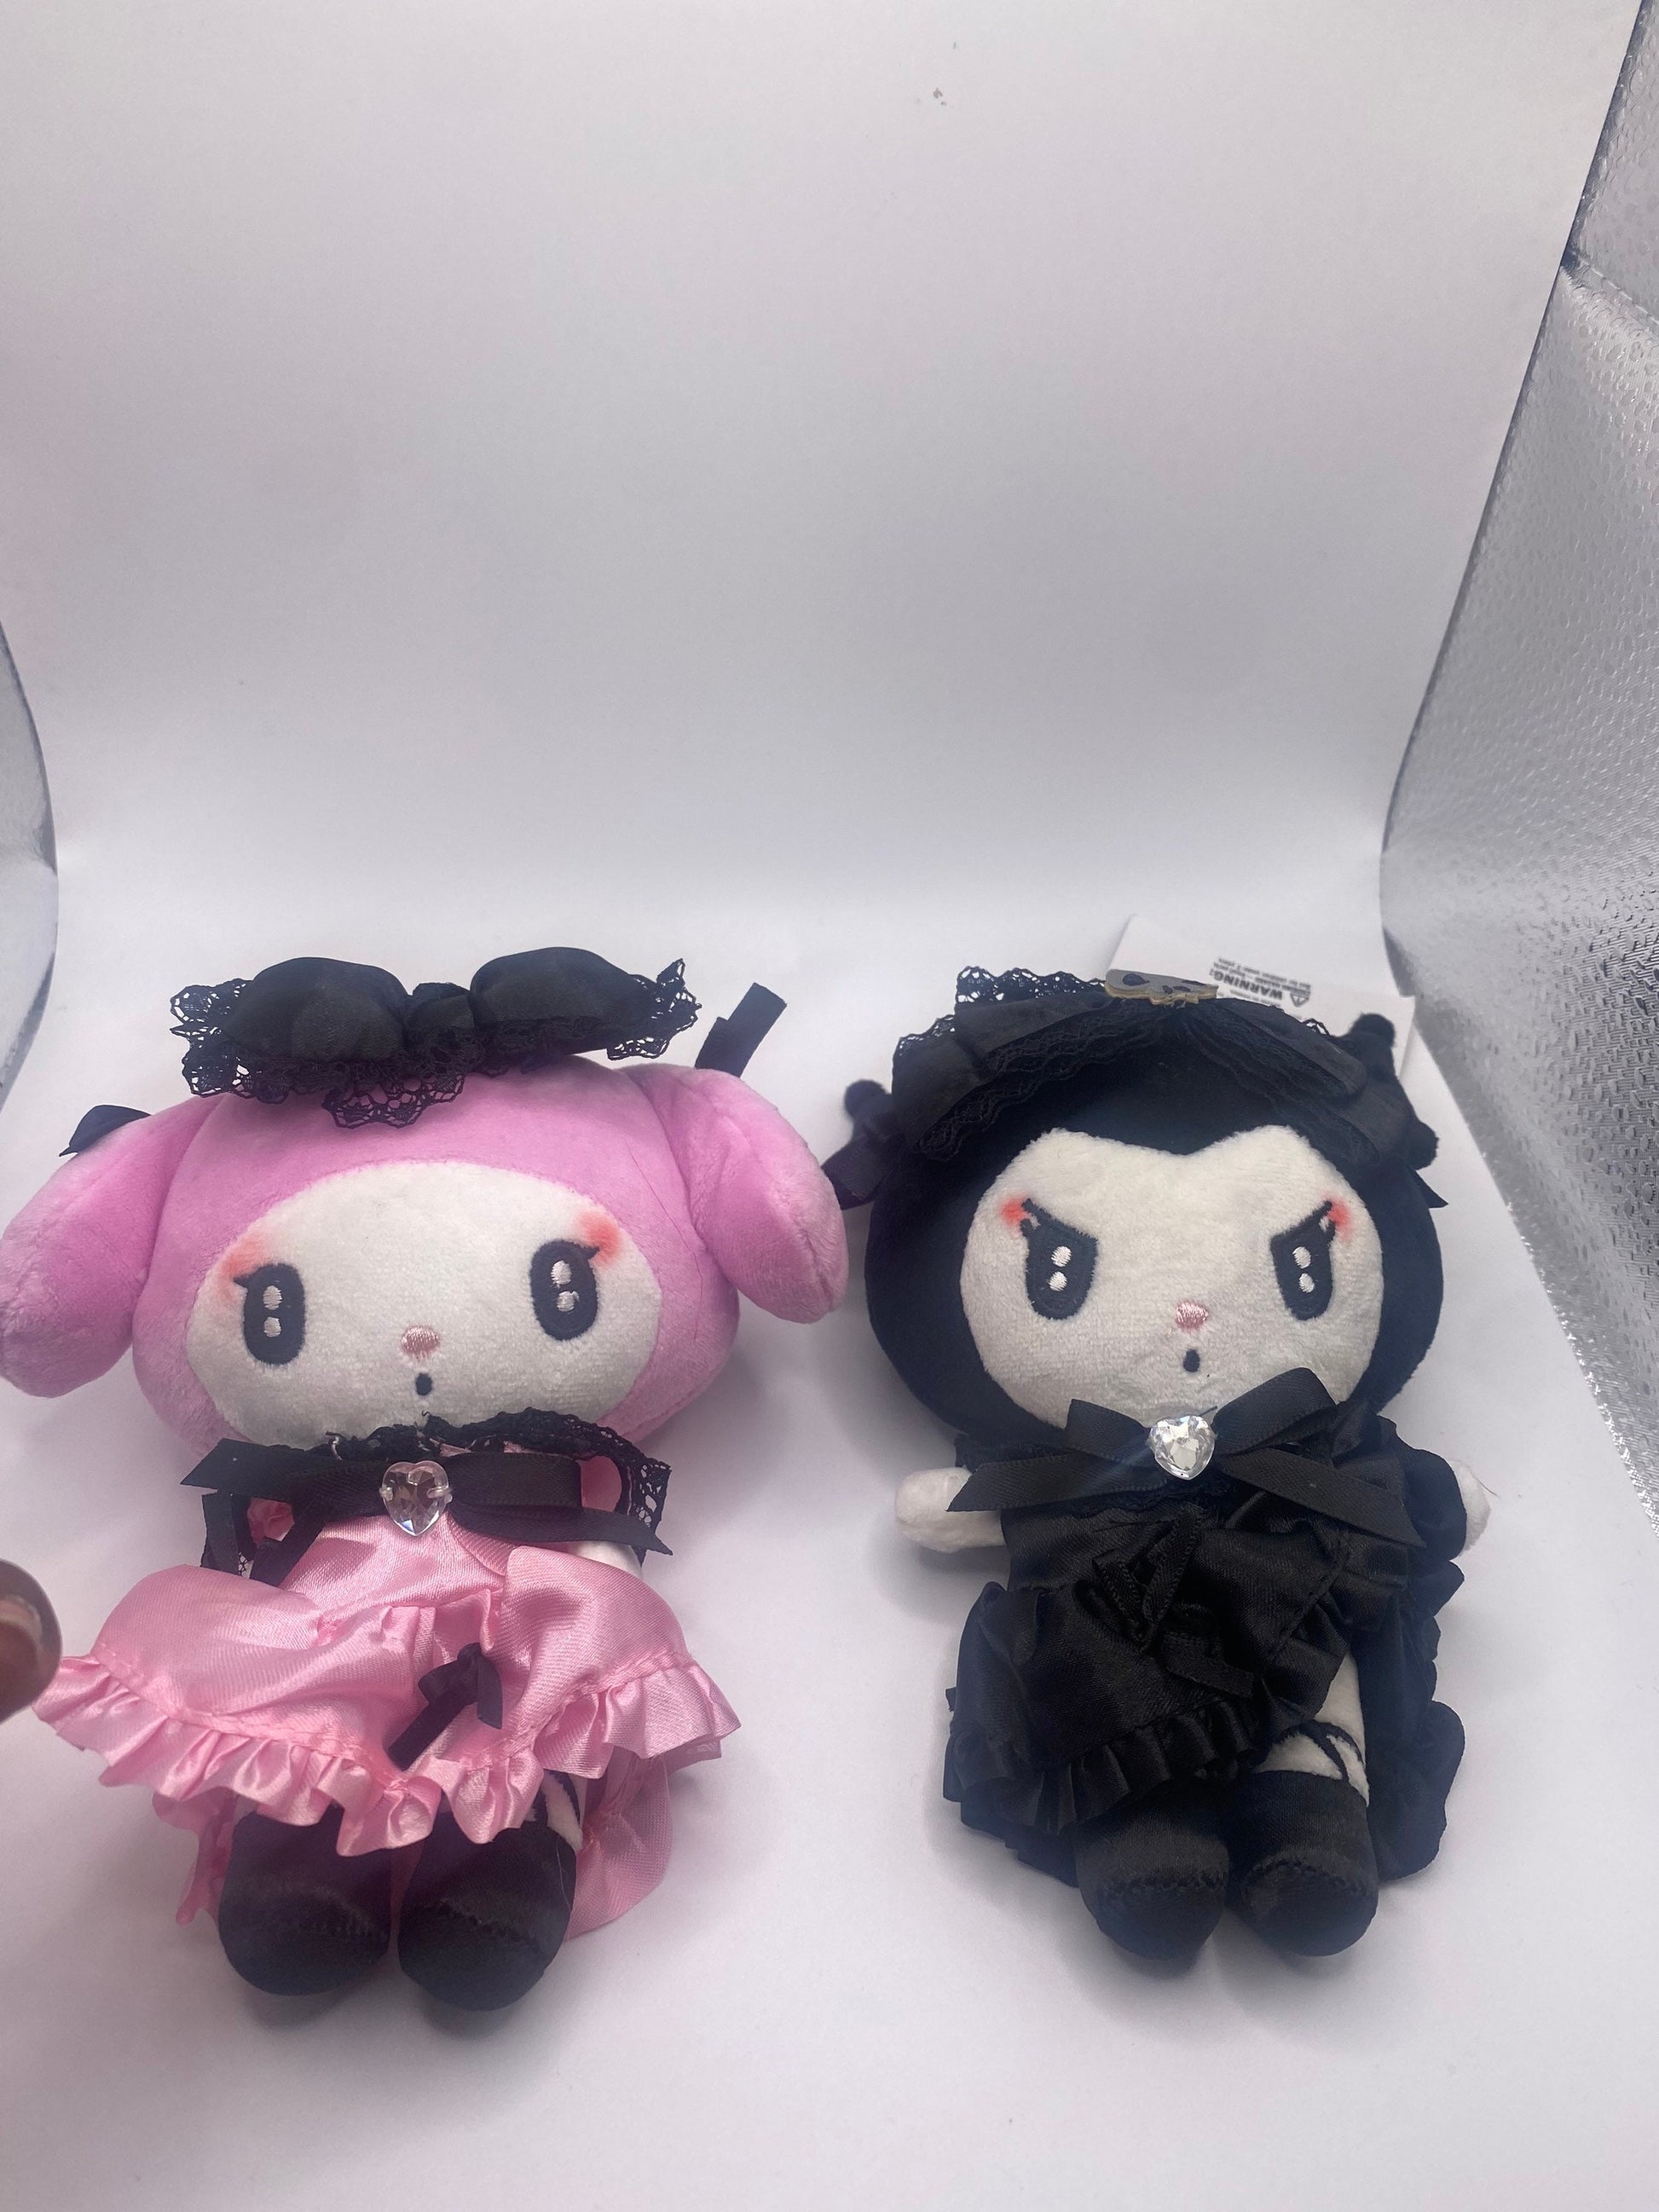 Melokuro Kuro /My Melody goth lace dolls